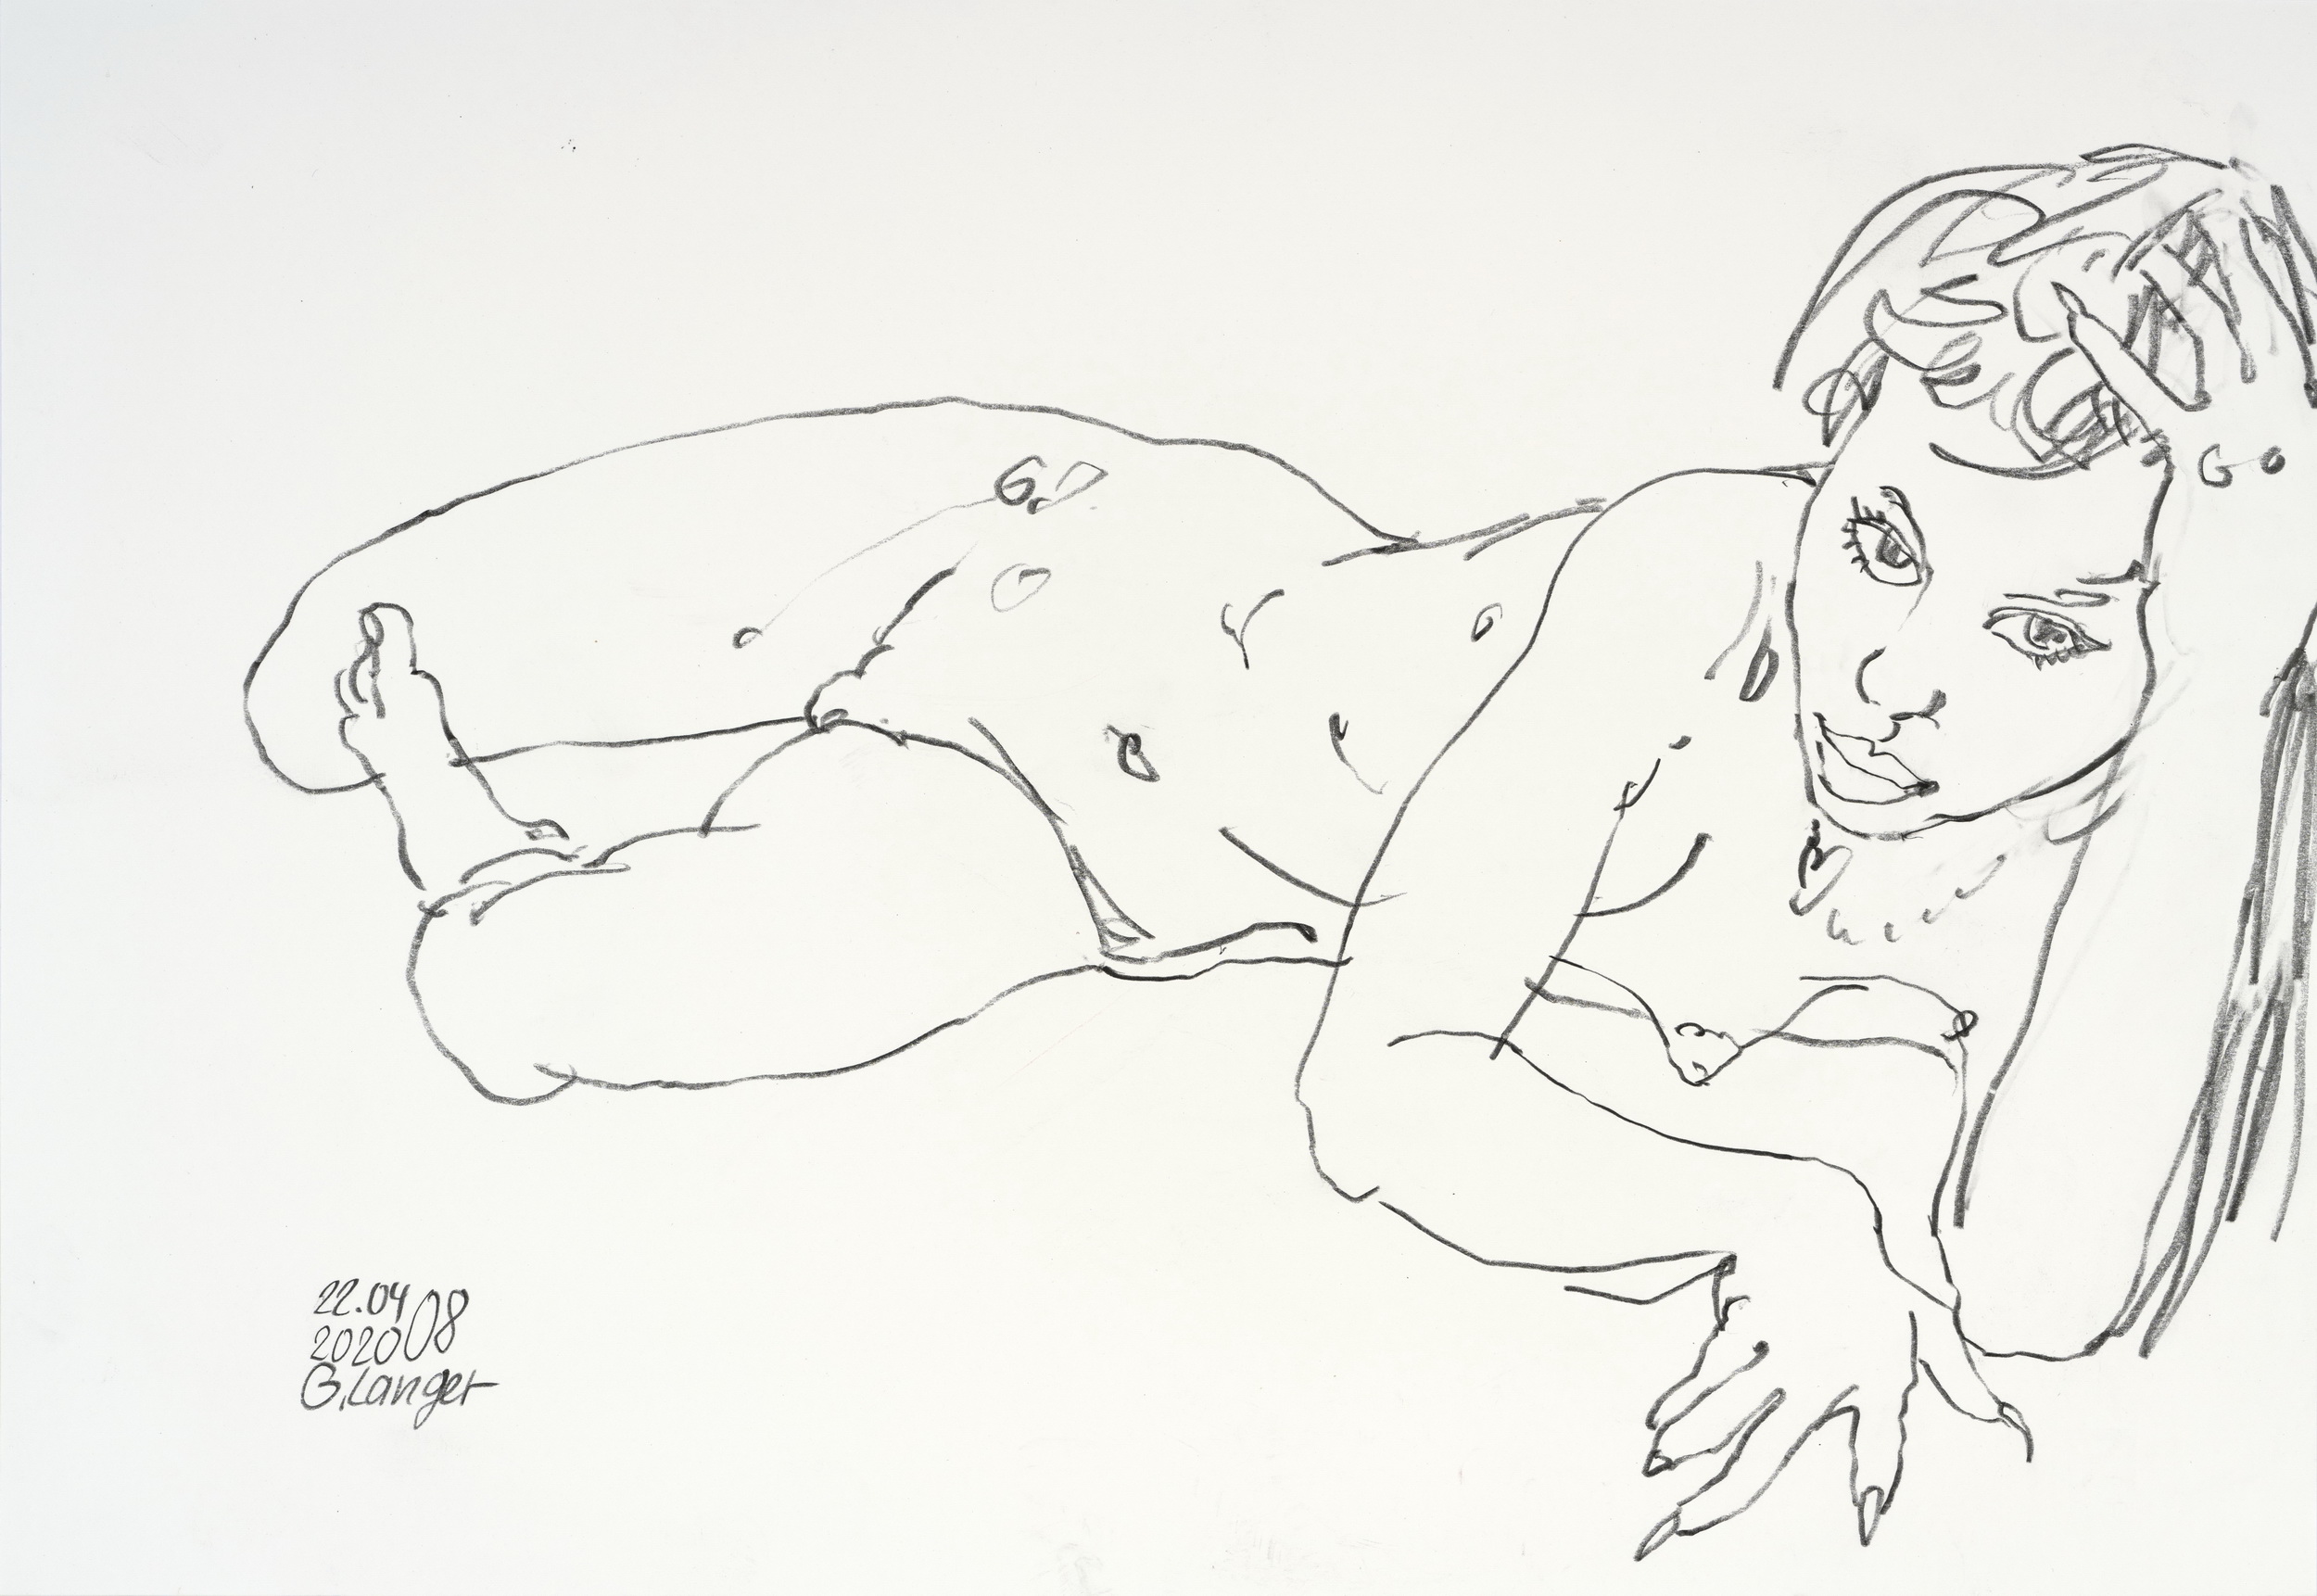 Gunter Langer, Liegendes nacktes Mädchen, 2020, 34 x 48 cm